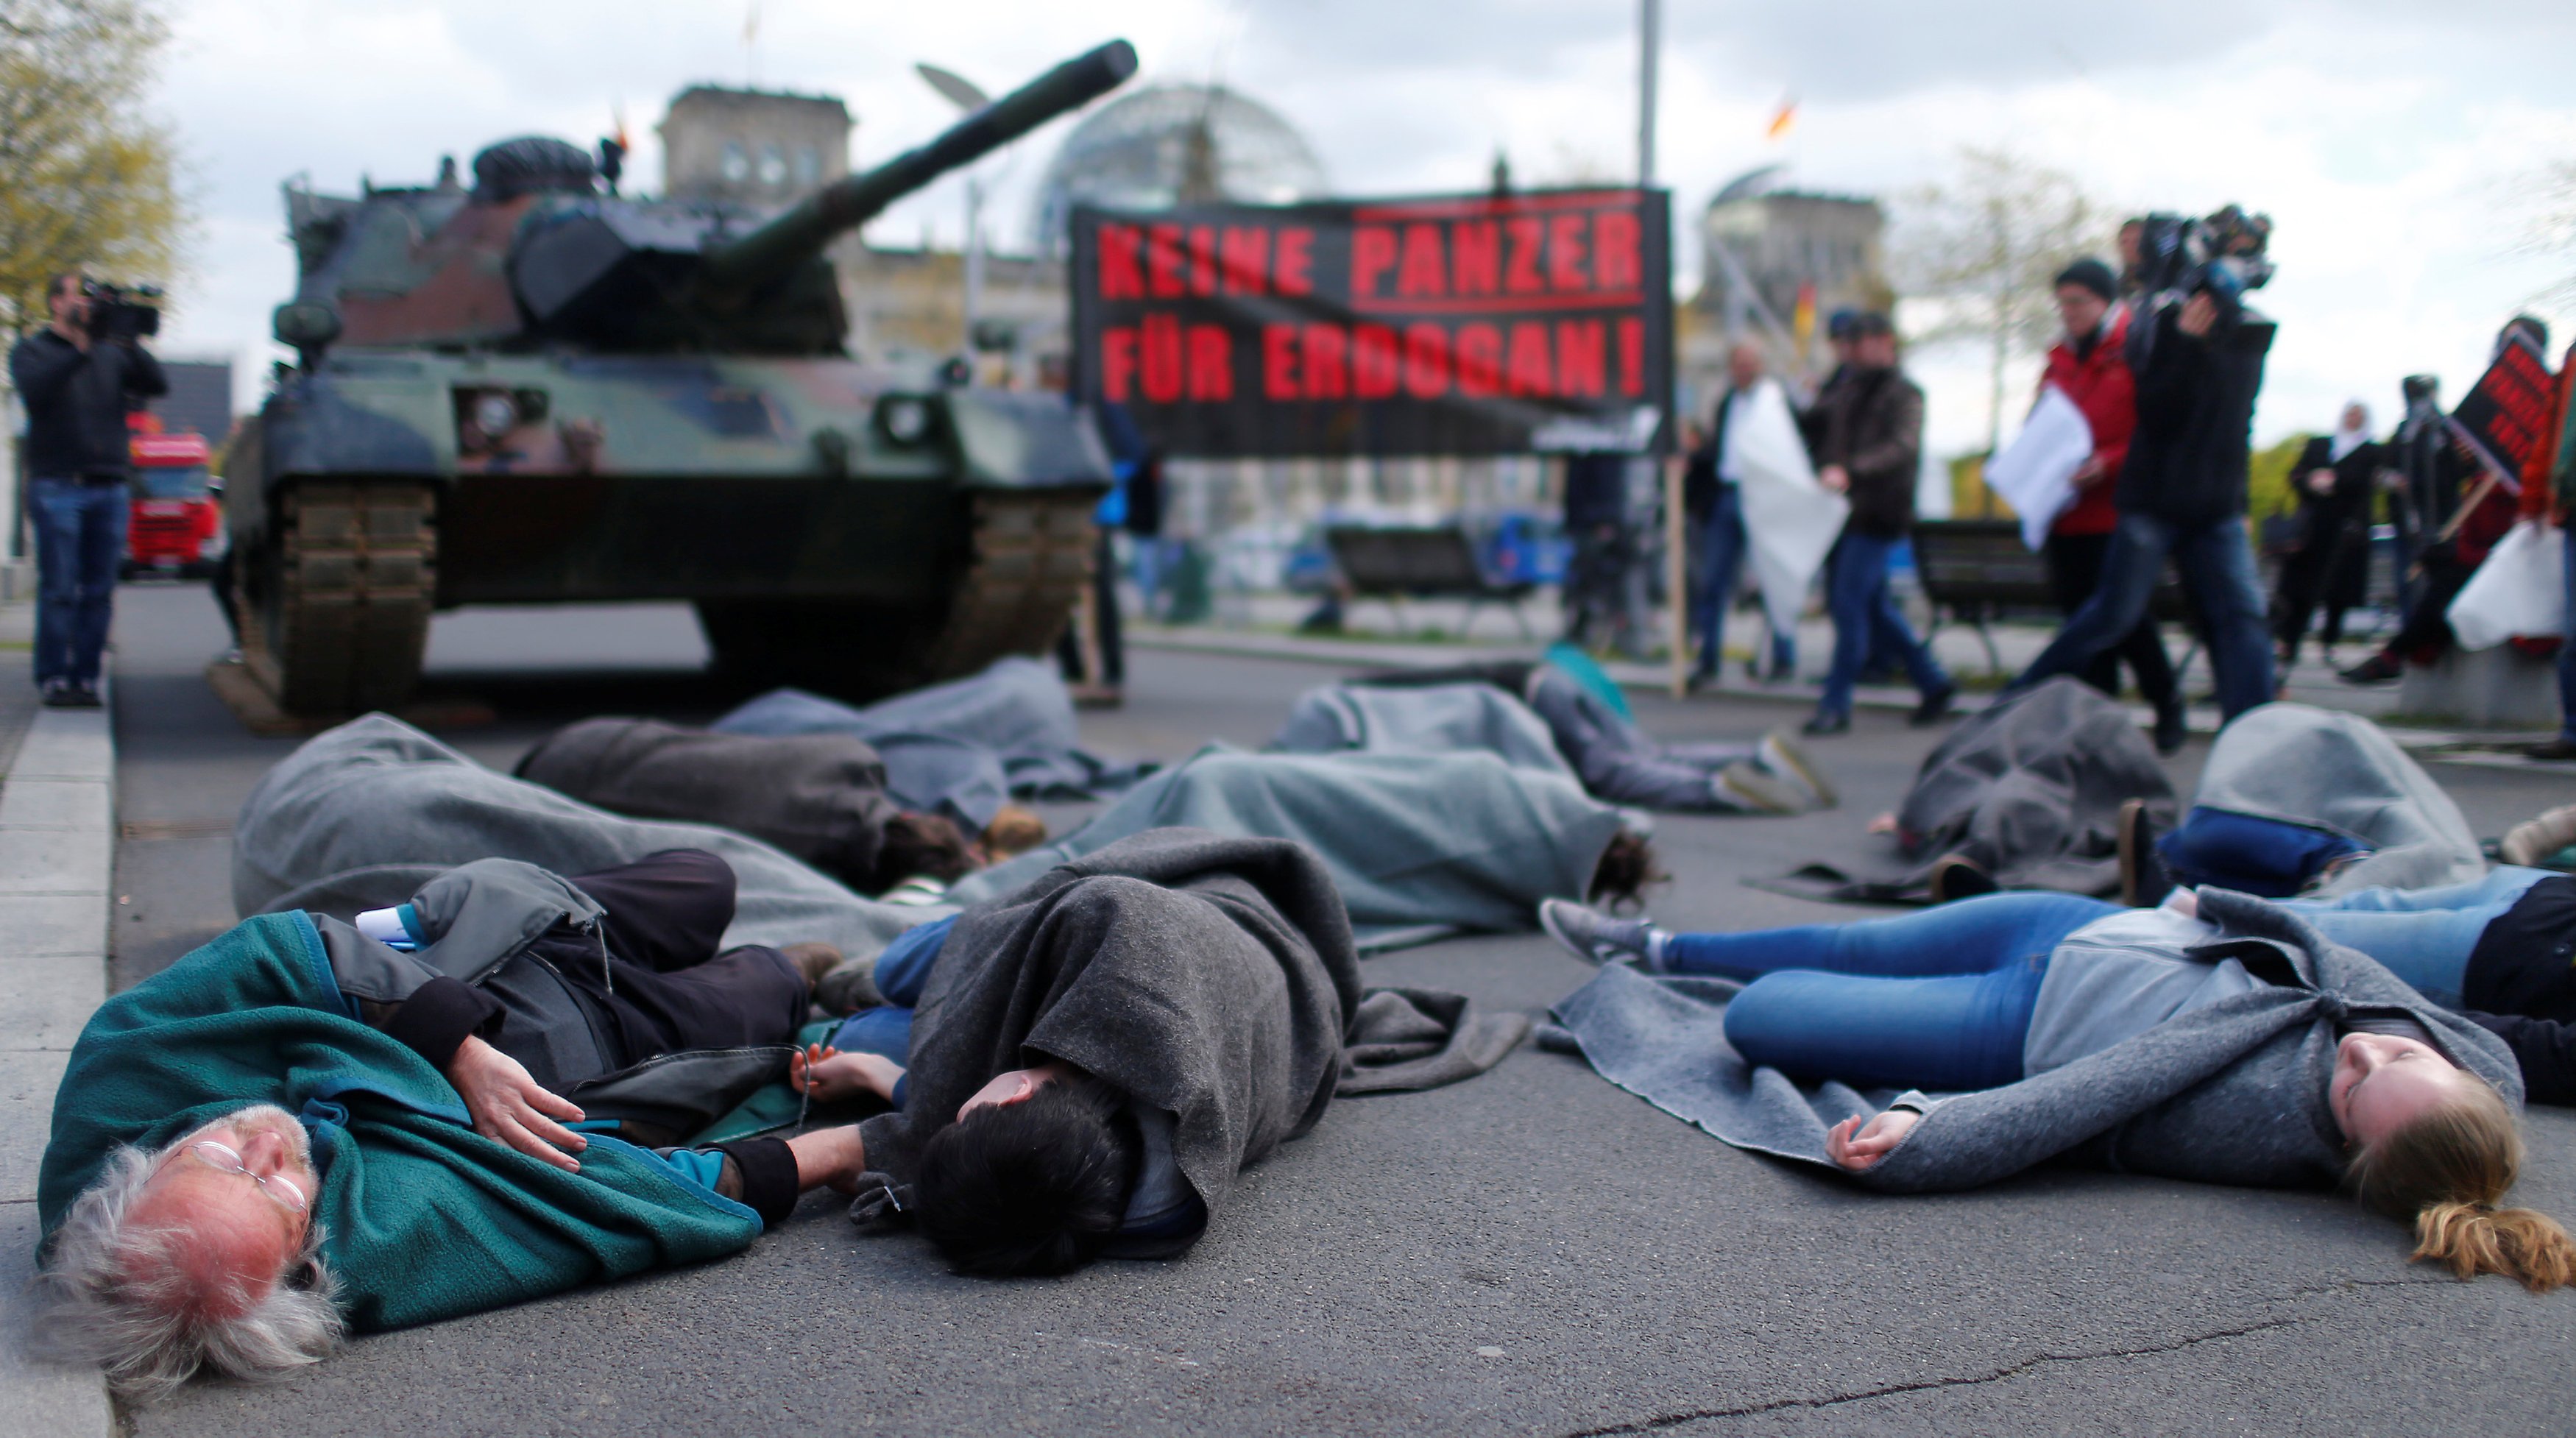 Almanlar Türkiye'yi protesto için maket tankın önüne yattı